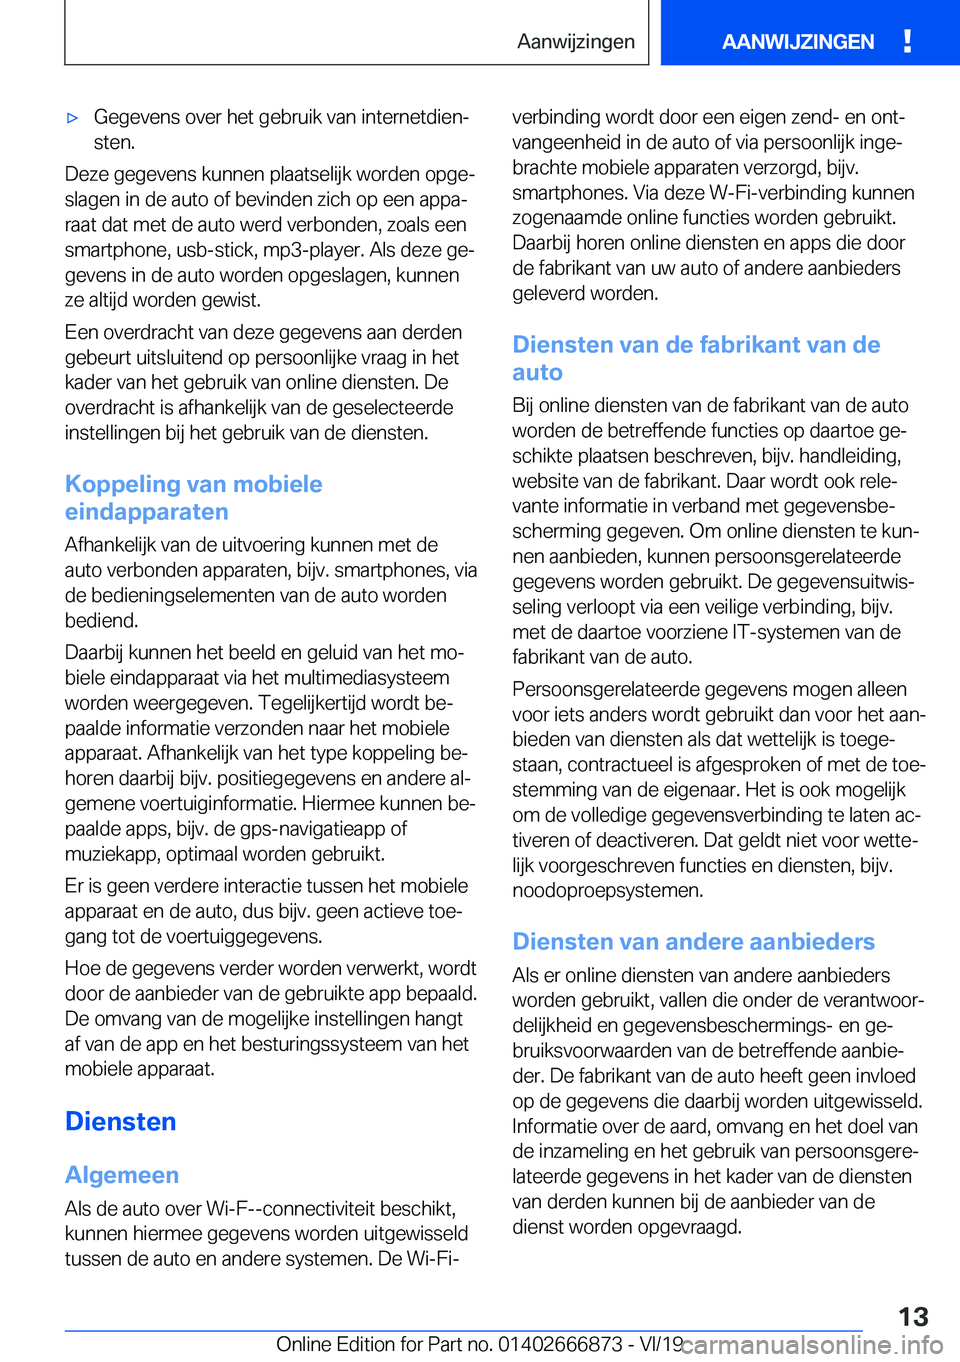 BMW X4 M 2020  Instructieboekjes (in Dutch) 'x�G�e�g�e�v�e�n�s��o�v�e�r��h�e�t��g�e�b�r�u�i�k��v�a�n��i�n�t�e�r�n�e�t�d�i�e�nj
�s�t�e�n�.
�D�e�z�e��g�e�g�e�v�e�n�s��k�u�n�n�e�n��p�l�a�a�t�s�e�l�i�j�k��w�o�r�d�e�n��o�p�g�ej
�s�l�